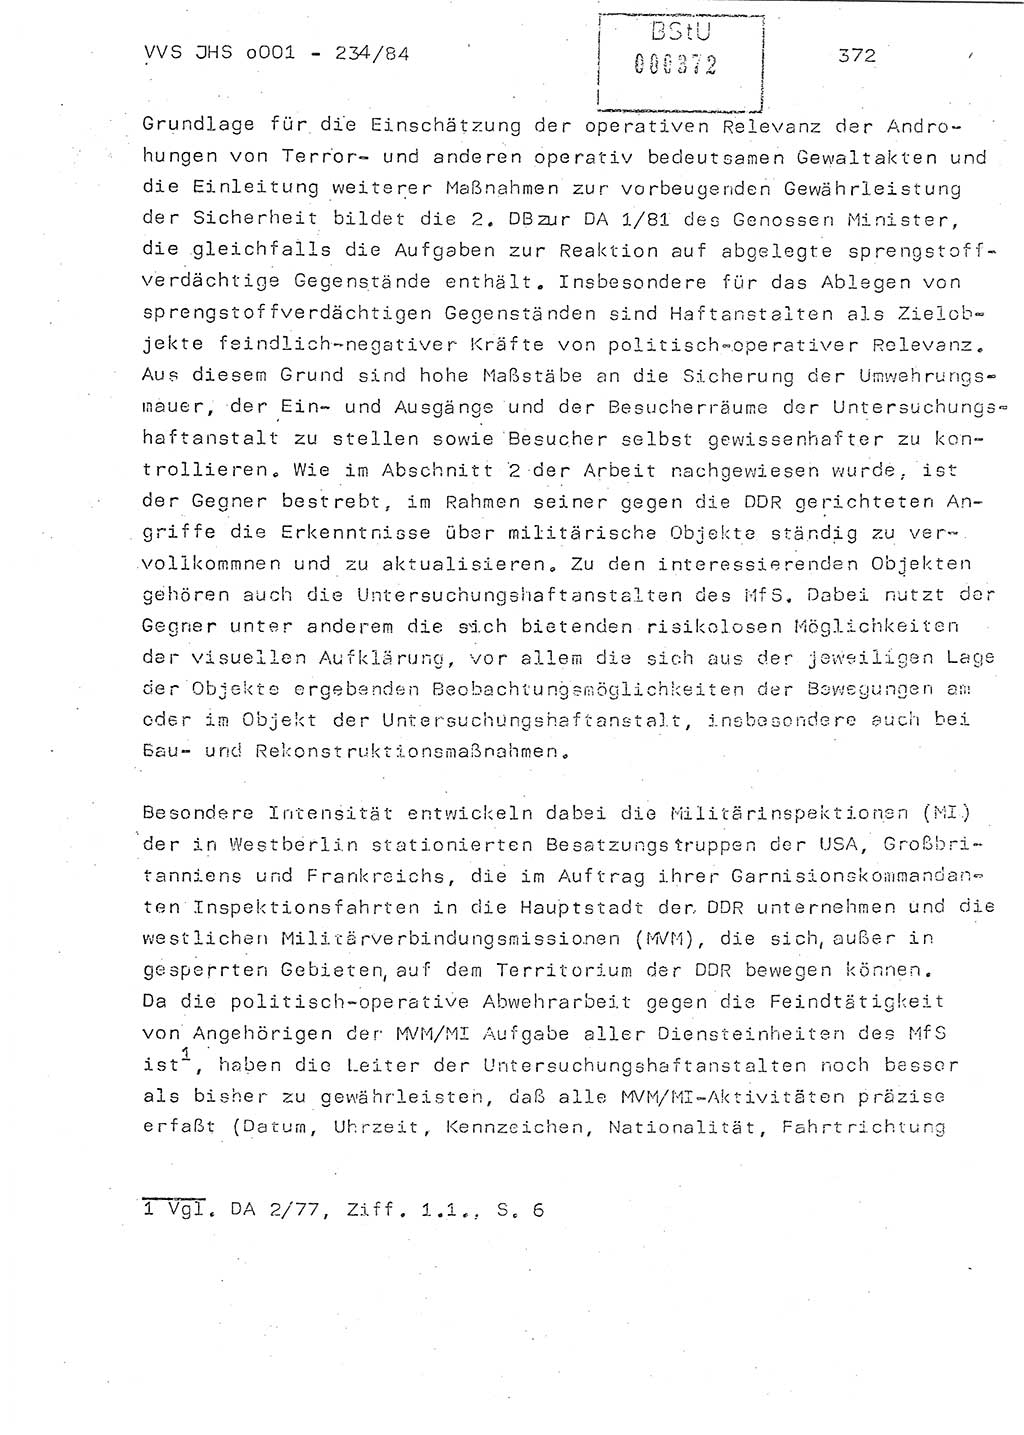 Dissertation Oberst Siegfried Rataizick (Abt. ⅩⅣ), Oberstleutnant Volkmar Heinz (Abt. ⅩⅣ), Oberstleutnant Werner Stein (HA Ⅸ), Hauptmann Heinz Conrad (JHS), Ministerium für Staatssicherheit (MfS) [Deutsche Demokratische Republik (DDR)], Juristische Hochschule (JHS), Vertrauliche Verschlußsache (VVS) o001-234/84, Potsdam 1984, Seite 372 (Diss. MfS DDR JHS VVS o001-234/84 1984, S. 372)